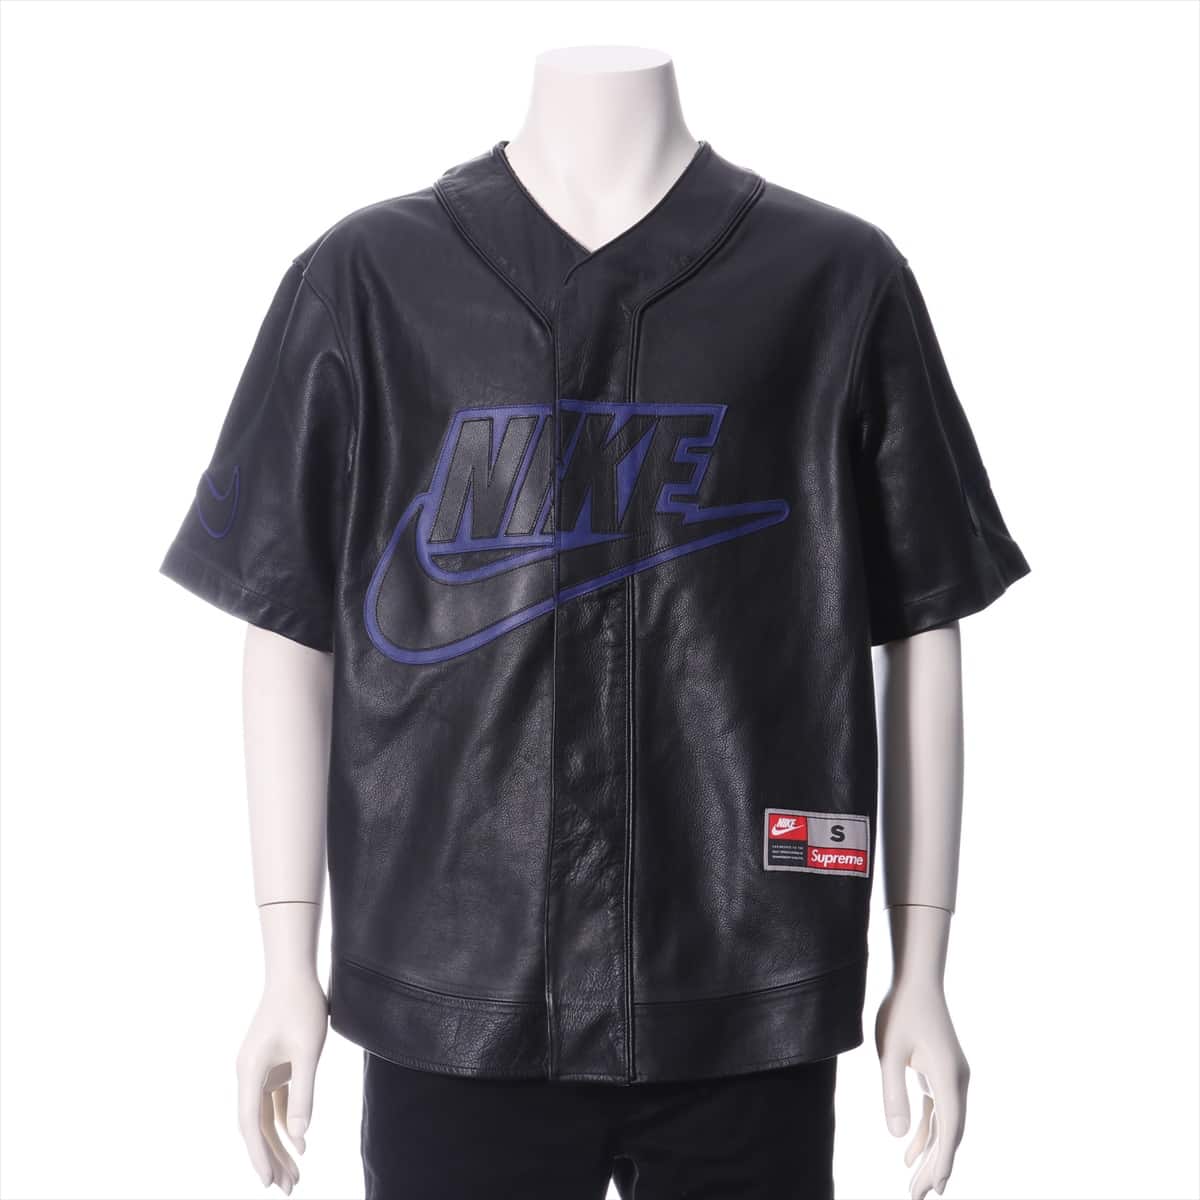 ナイキ×シュプリーム レザー シャツ S メンズ ブラック 19AW  Leather Baseball Jersey